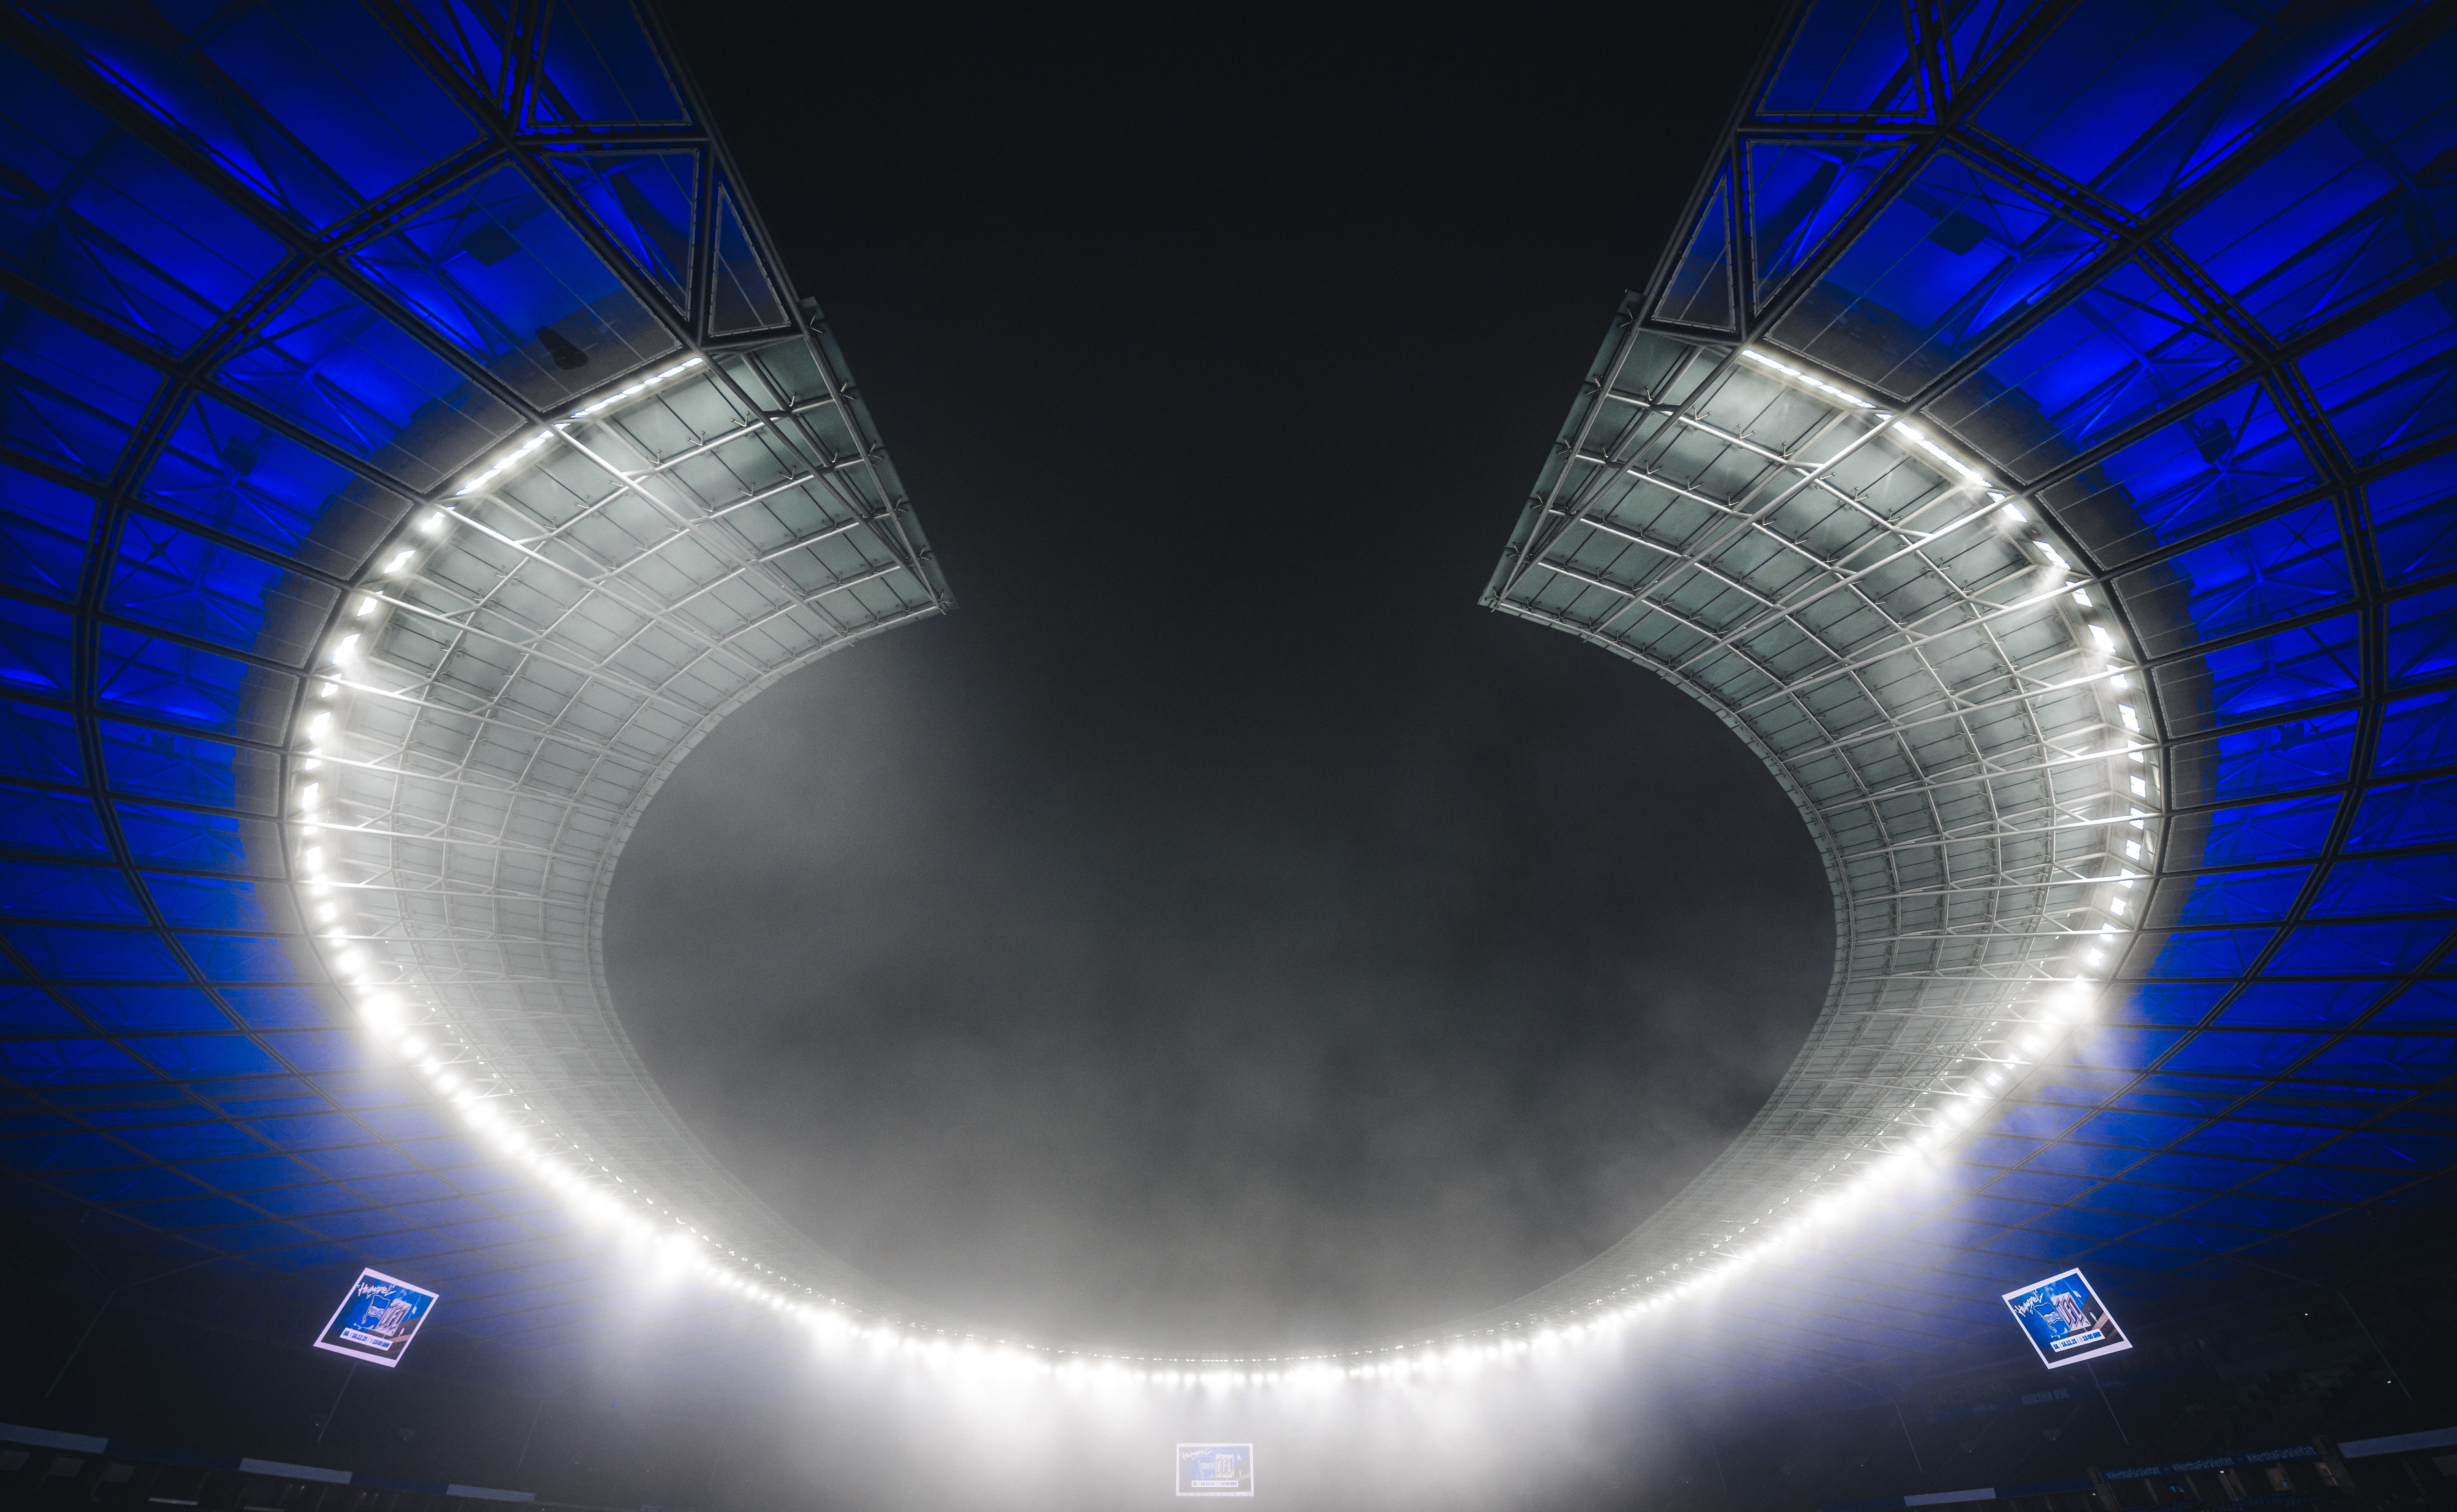 Das blau-weiße Dach des Berliner Olympiastadions bei Nacht.